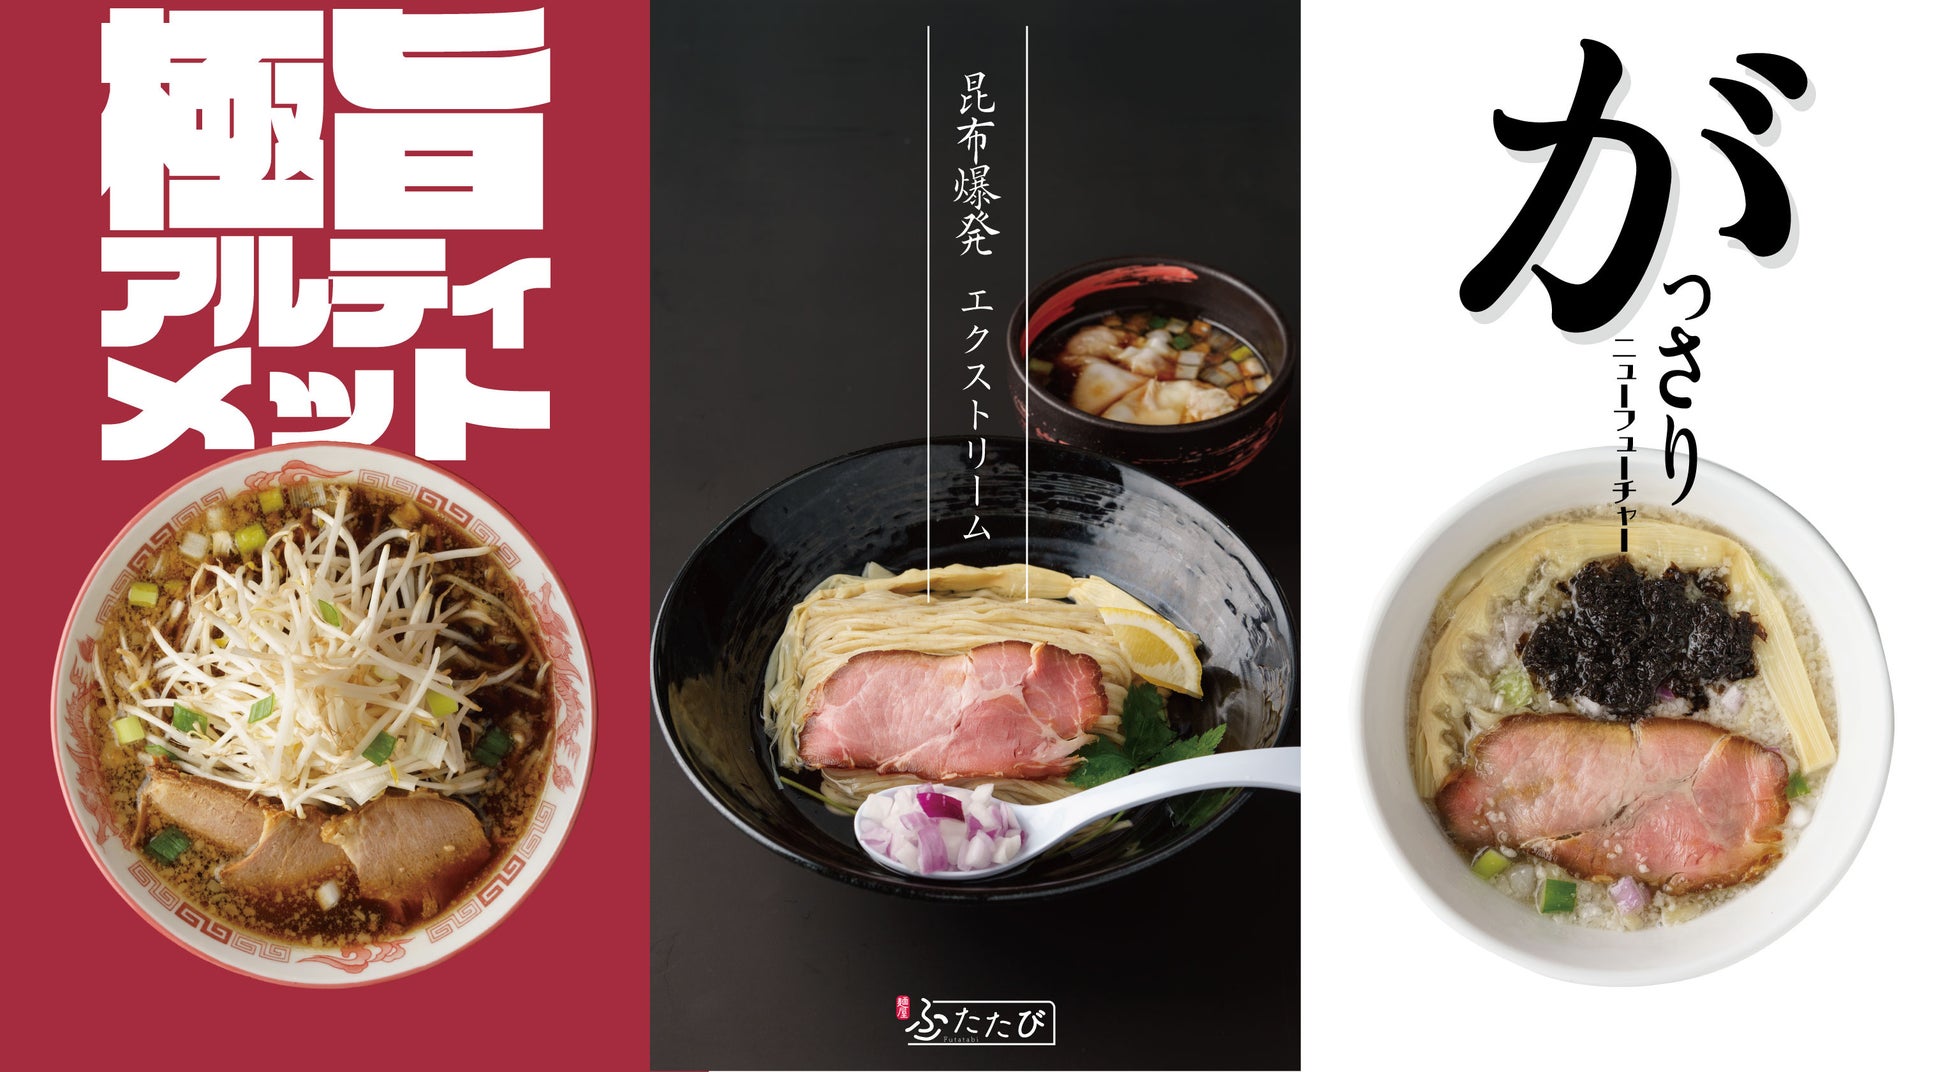 米粉を使ったグルテンフリーのあげかまぼこが遂に誕生！
神戸市の丸八蒲鉾本店・公式ネットショップで6月5日に販売開始